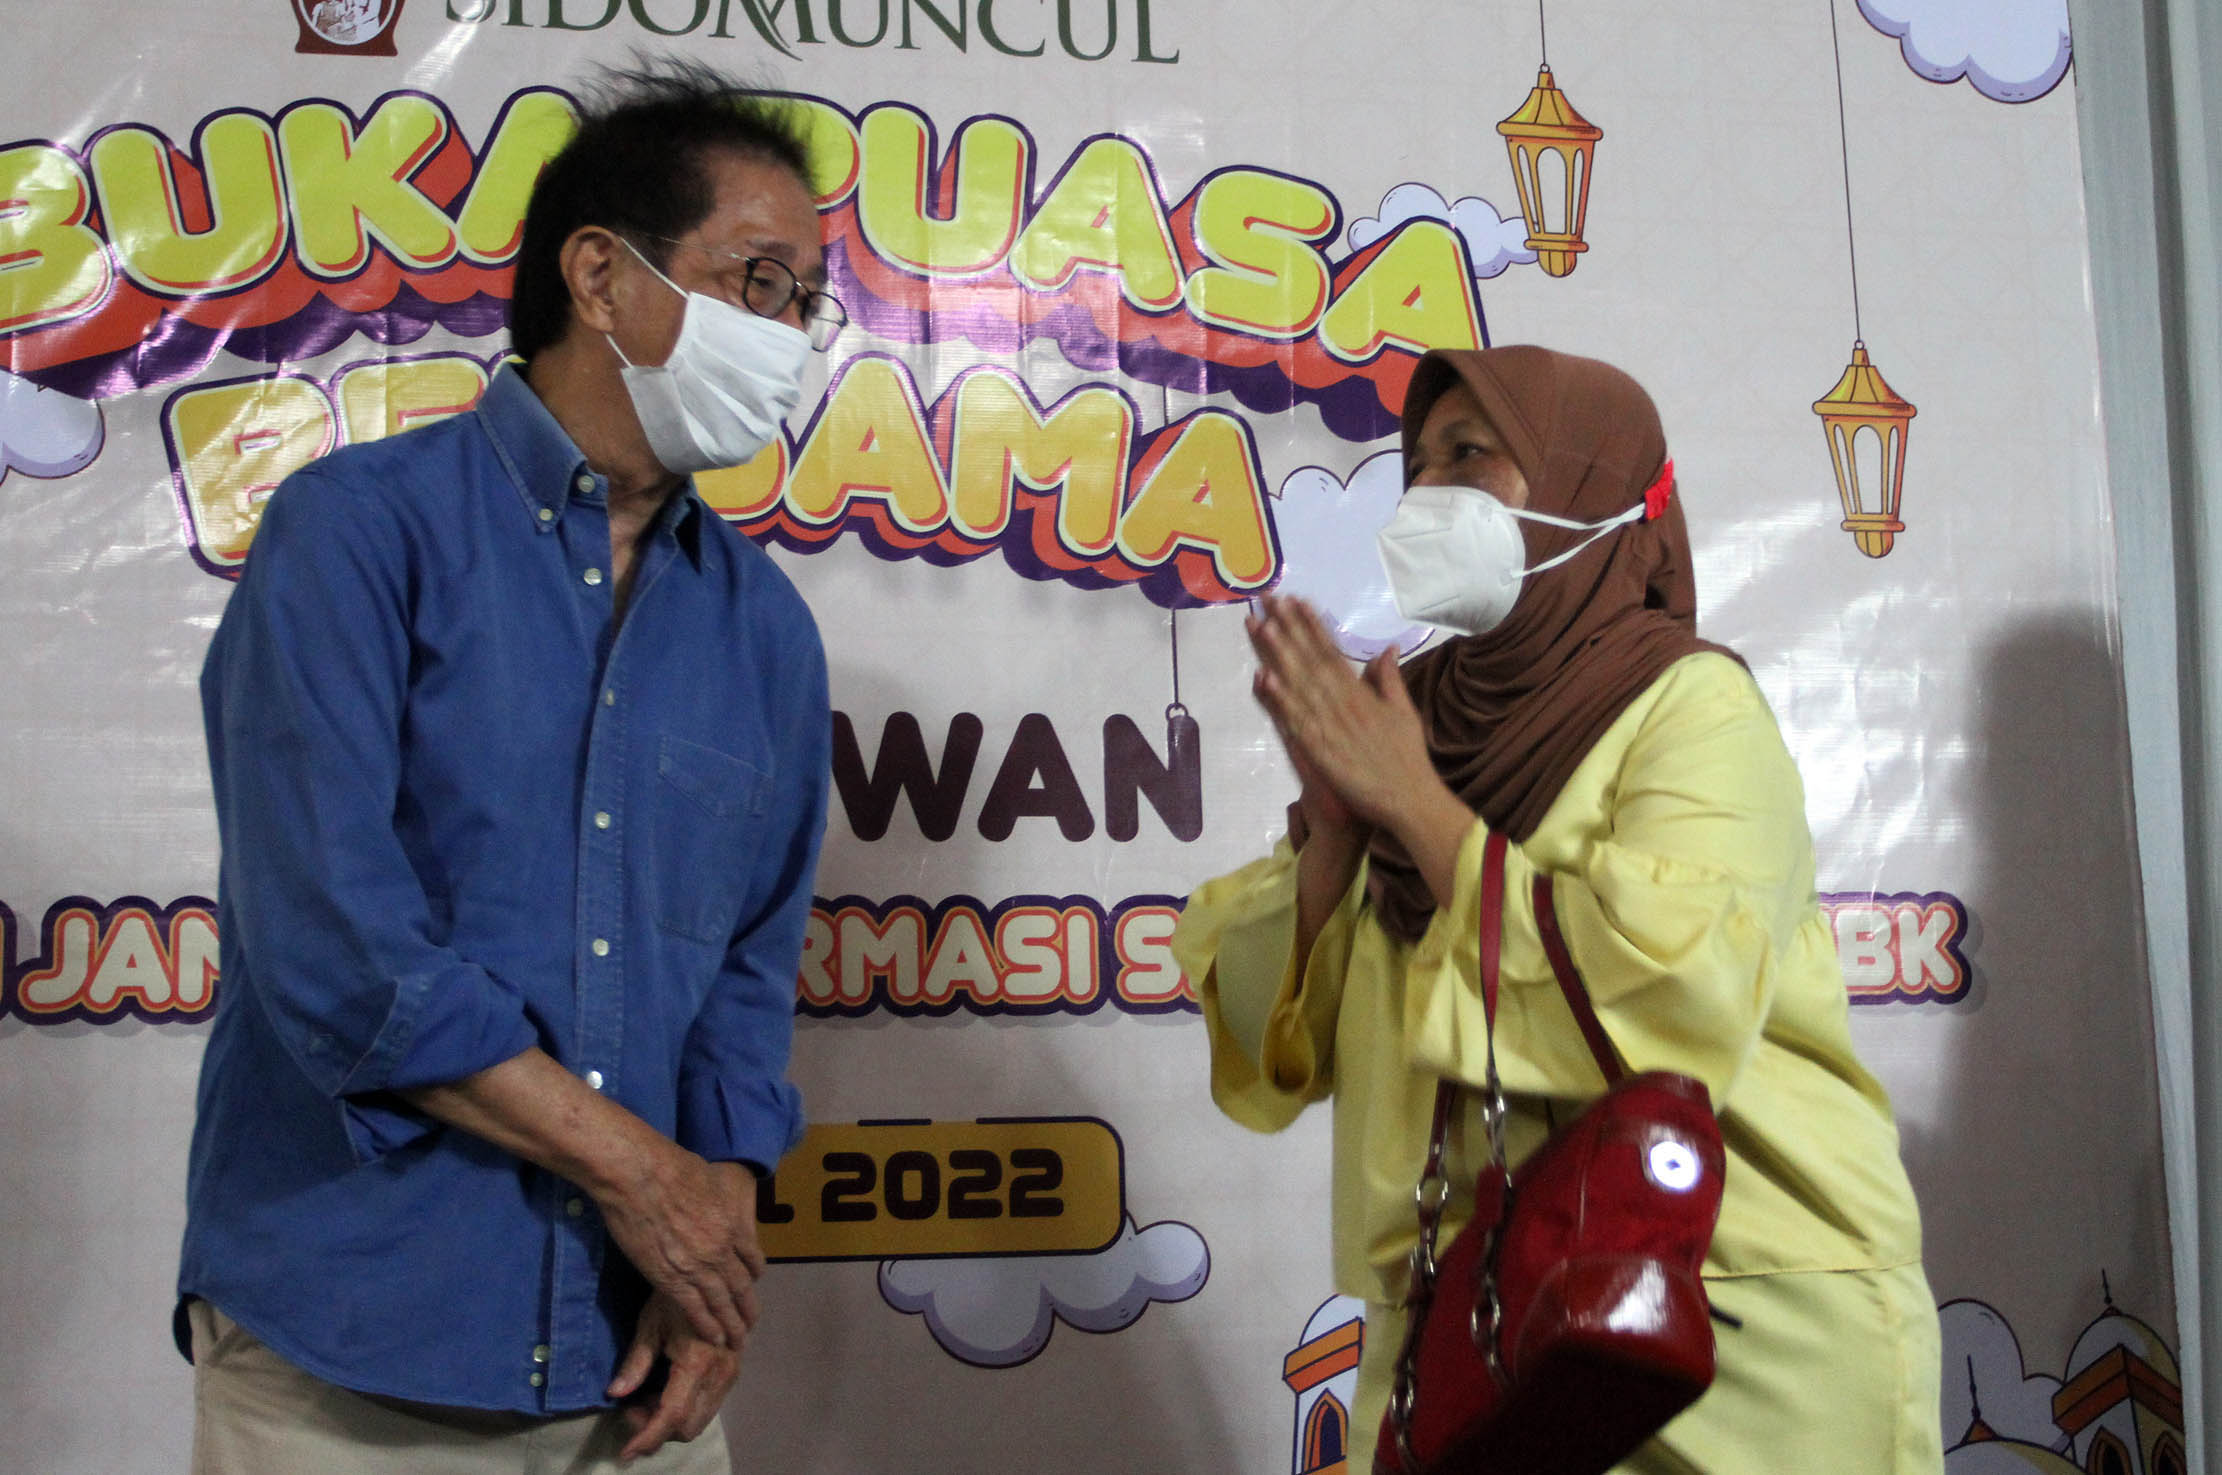 Direktur Sido Muncul Irwan Hidayat berbincang dengan salah satu pengurus panti asuhan saat acara buka bersama karyawan dan penyerahan bantuan untuk 1000 anak yatim di Jakarta 13 April 2022. Foto : Panji Asmoro/TrenAsia.